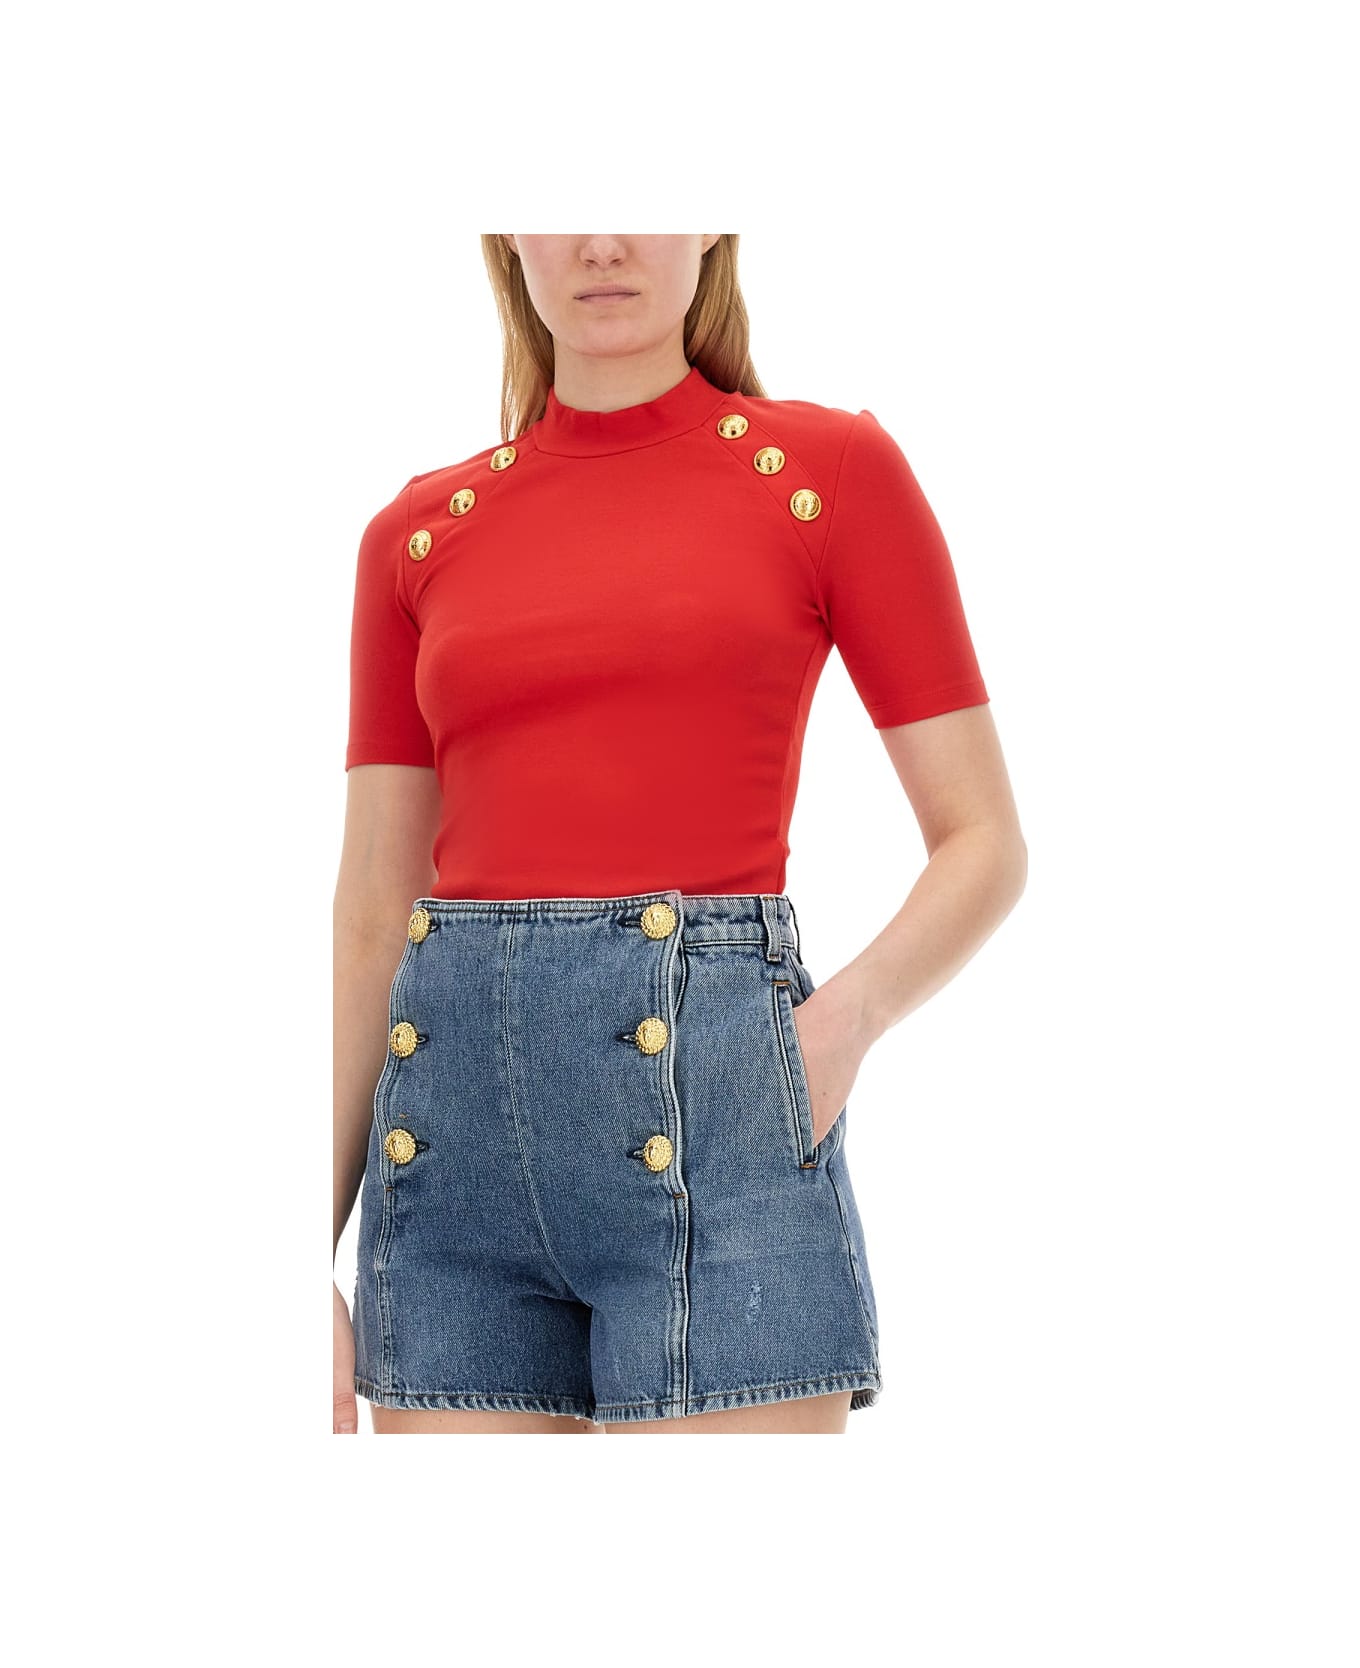 Balmain Slim Fit T-shirt - RED ニットウェア